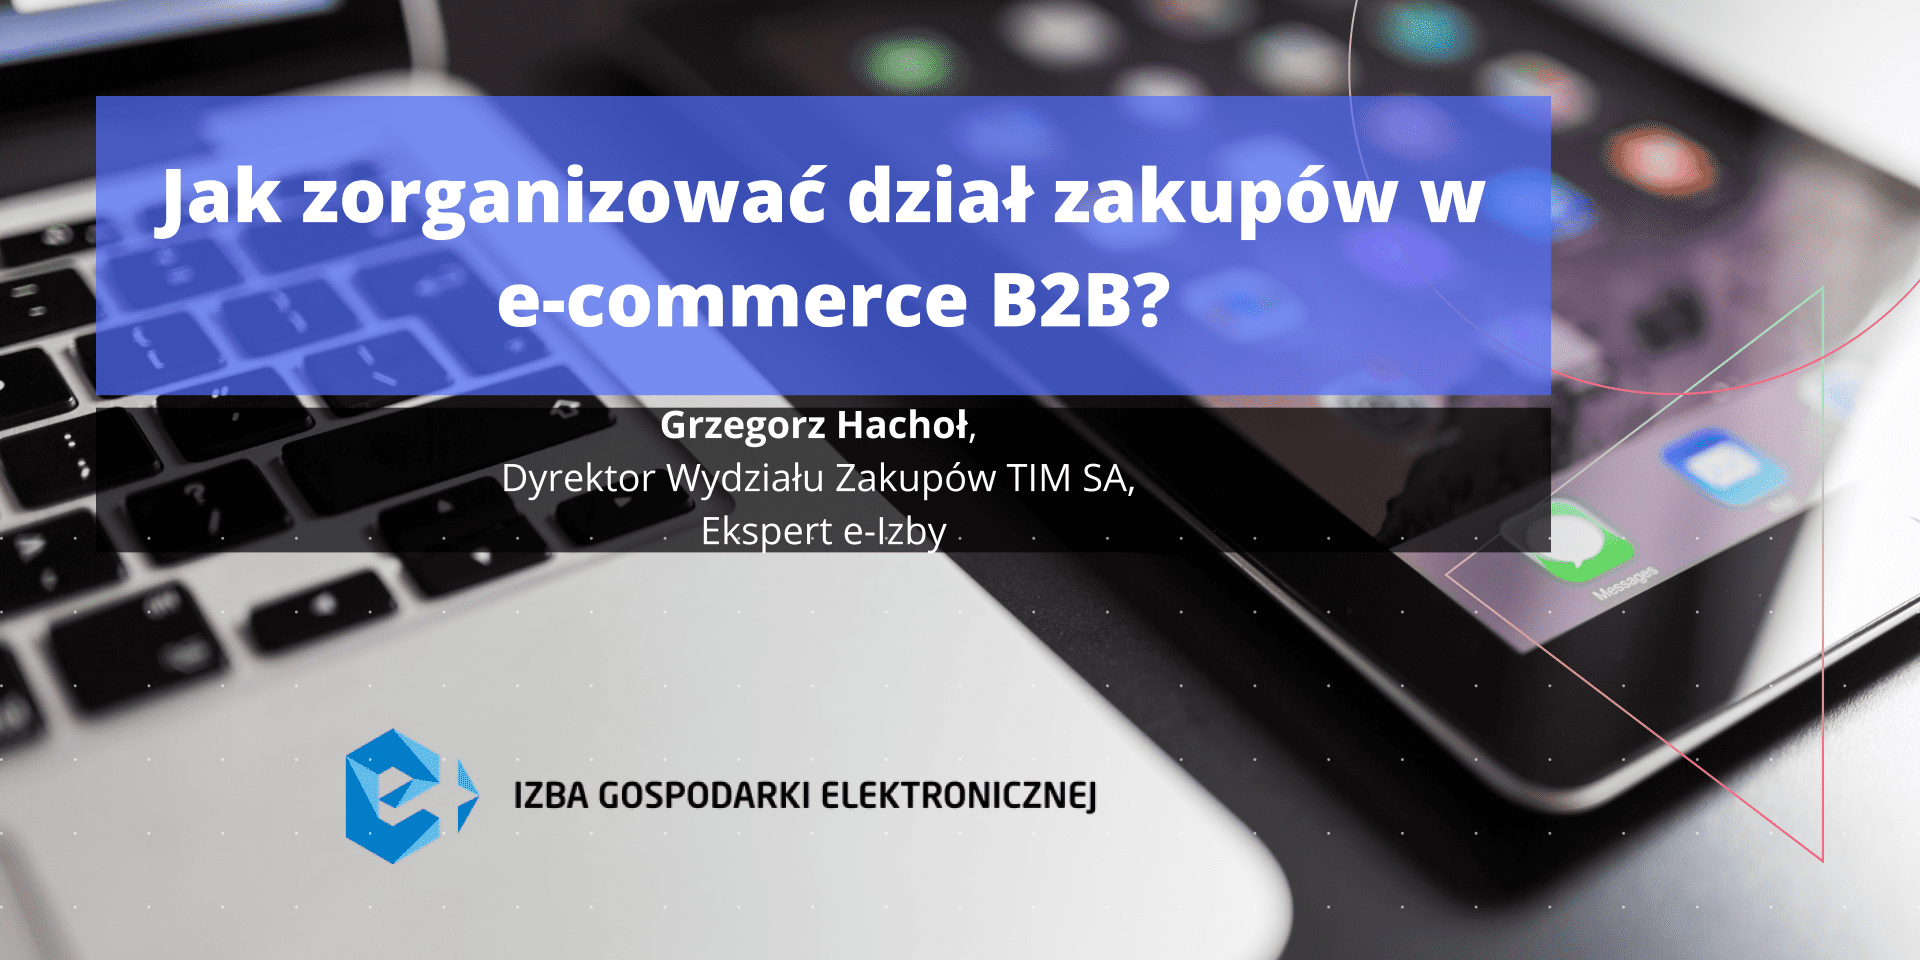 Jak zorganizować dział zakupów w e-commerce B2B?